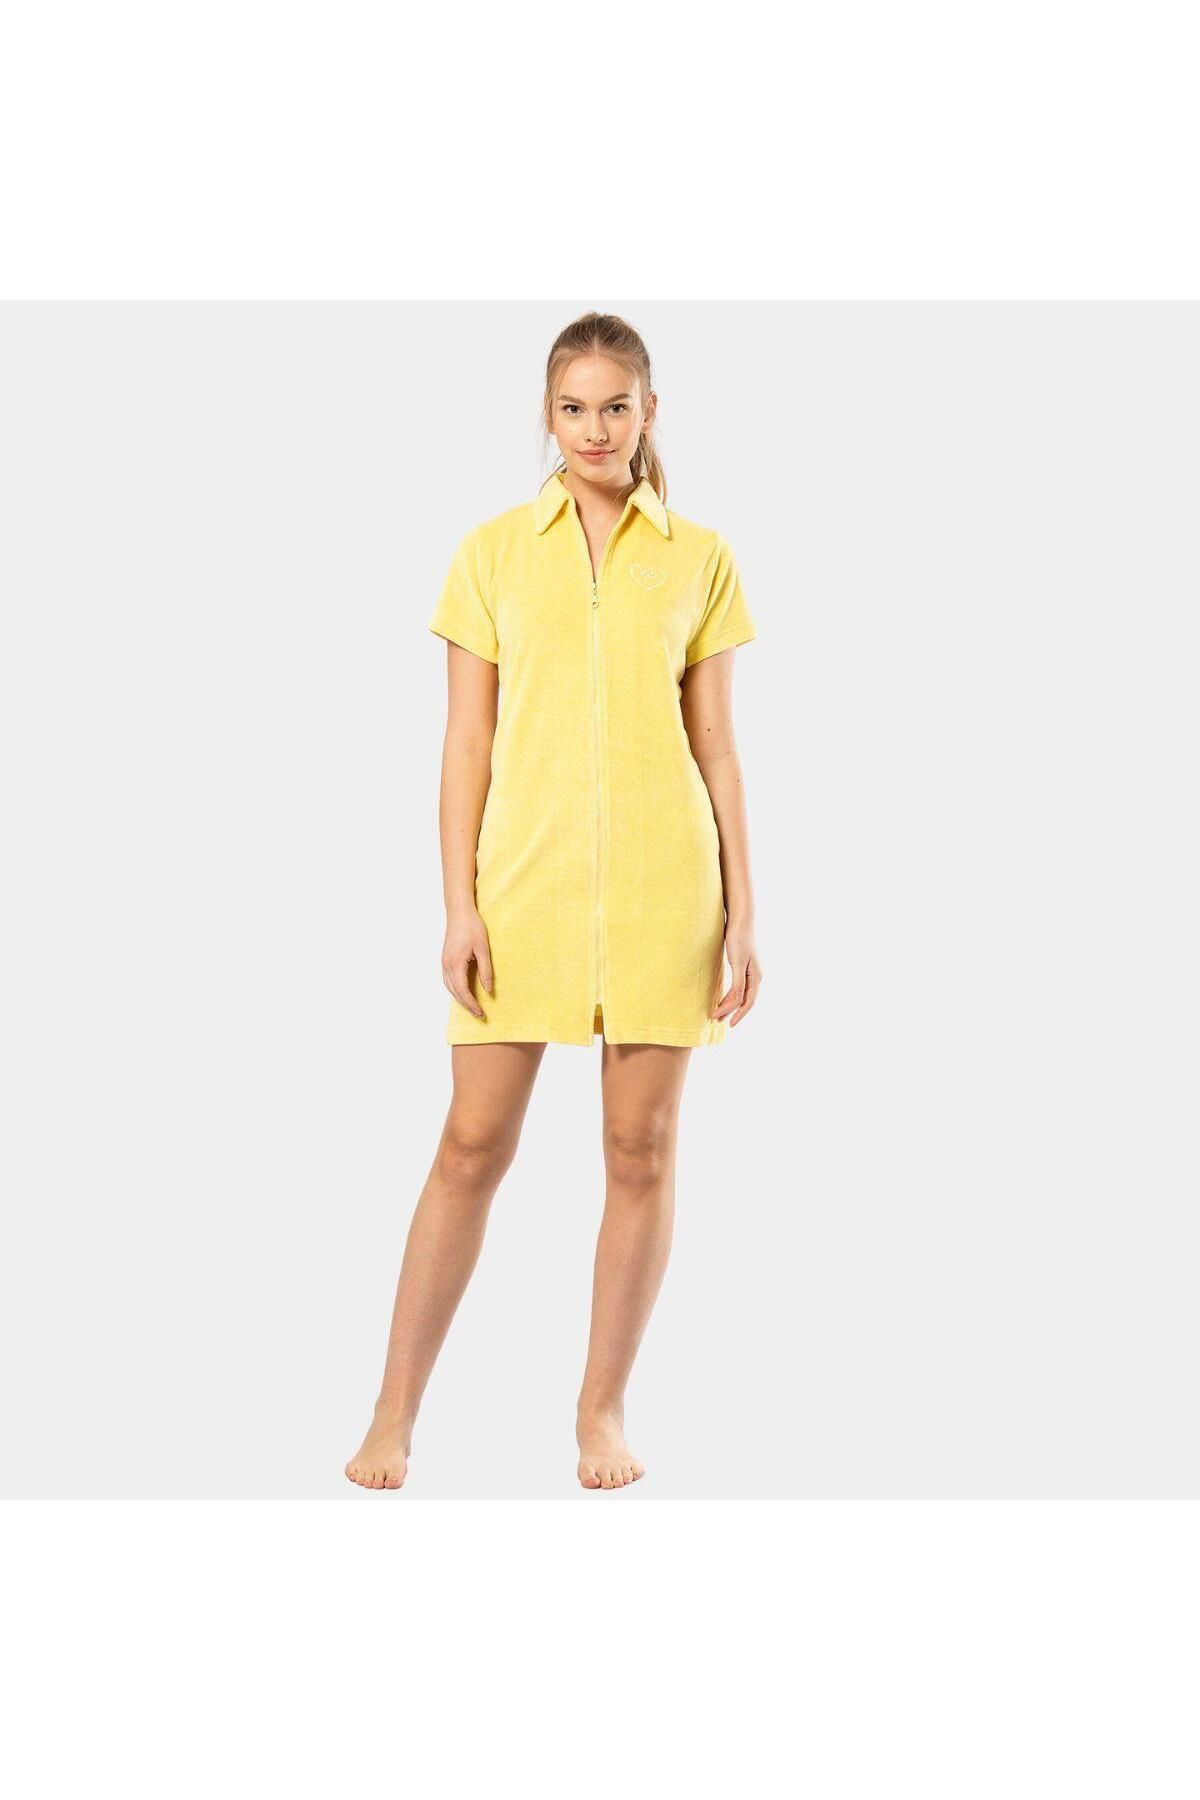 Türen Tüten Yakalı Fermuarlı Elbise 622/sarı